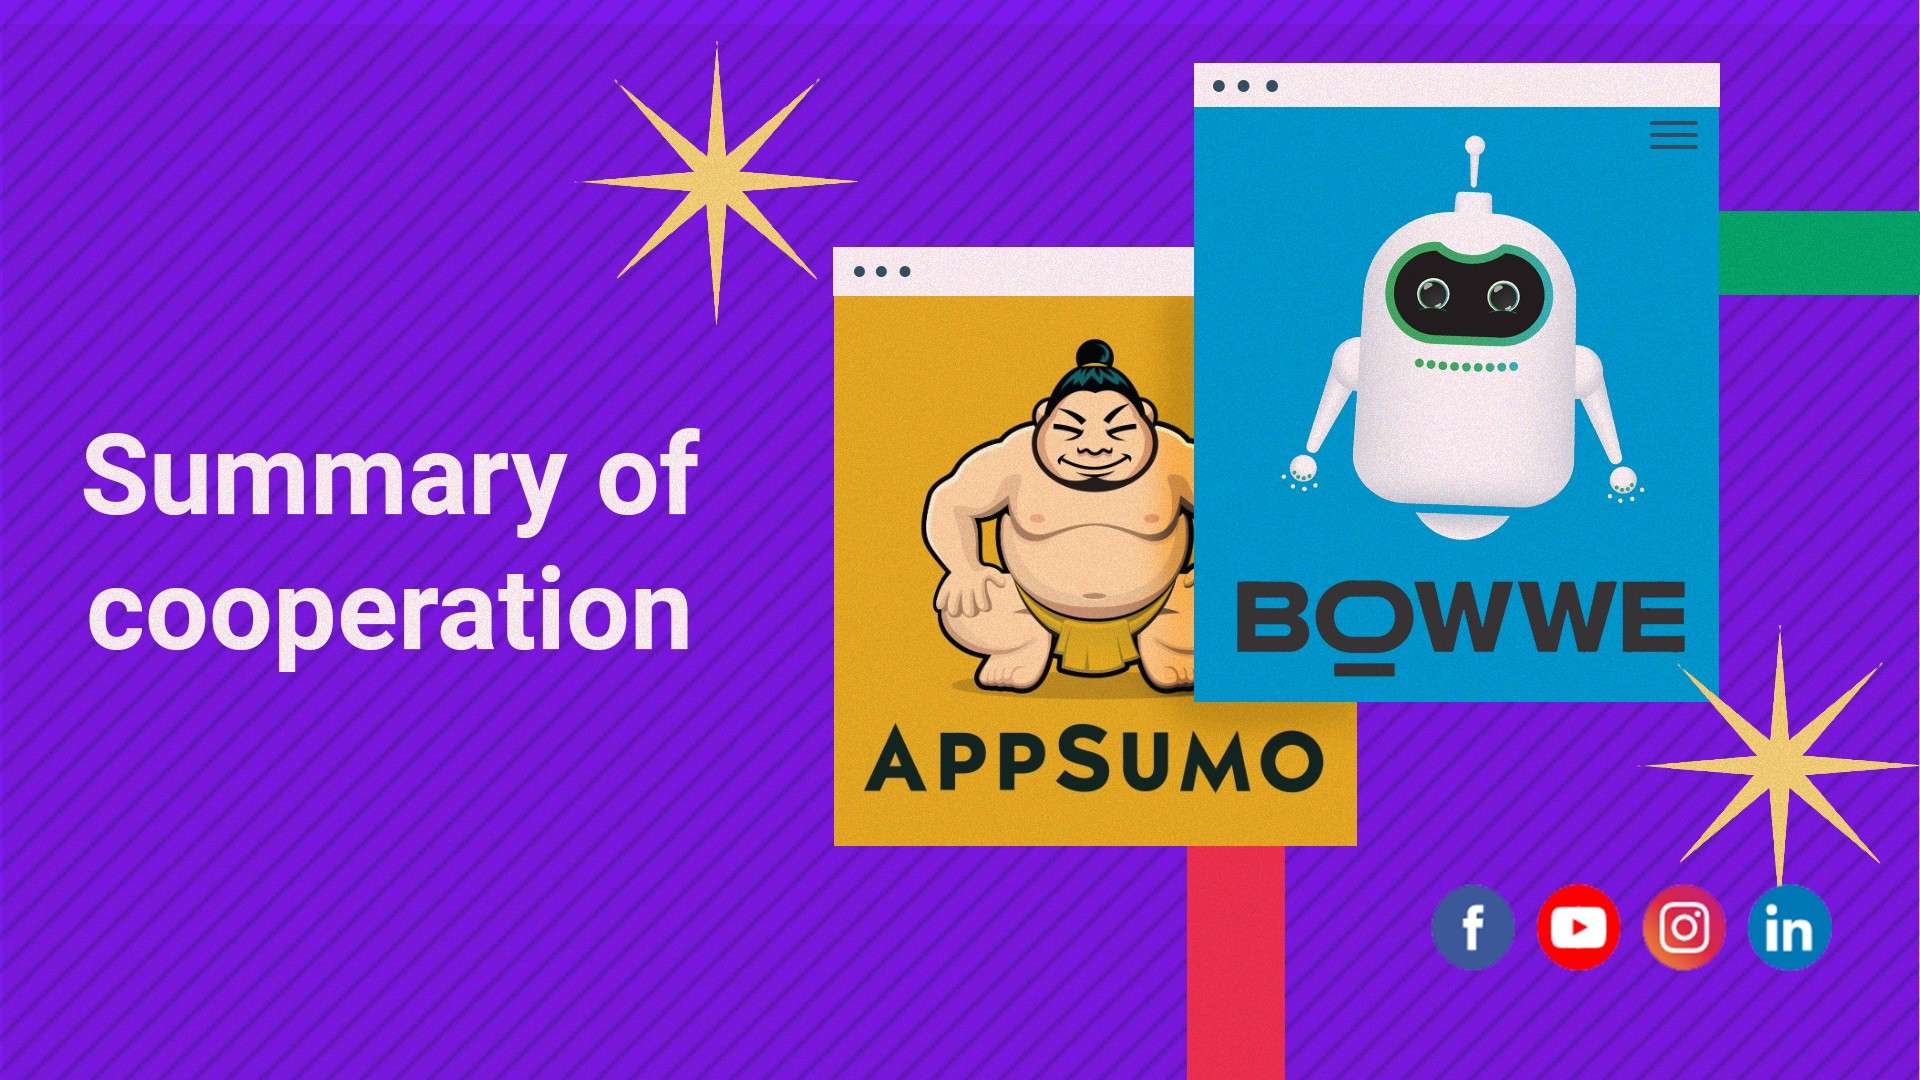 Как BOWWE стал лучшим автором на Appsumo? [Пример]